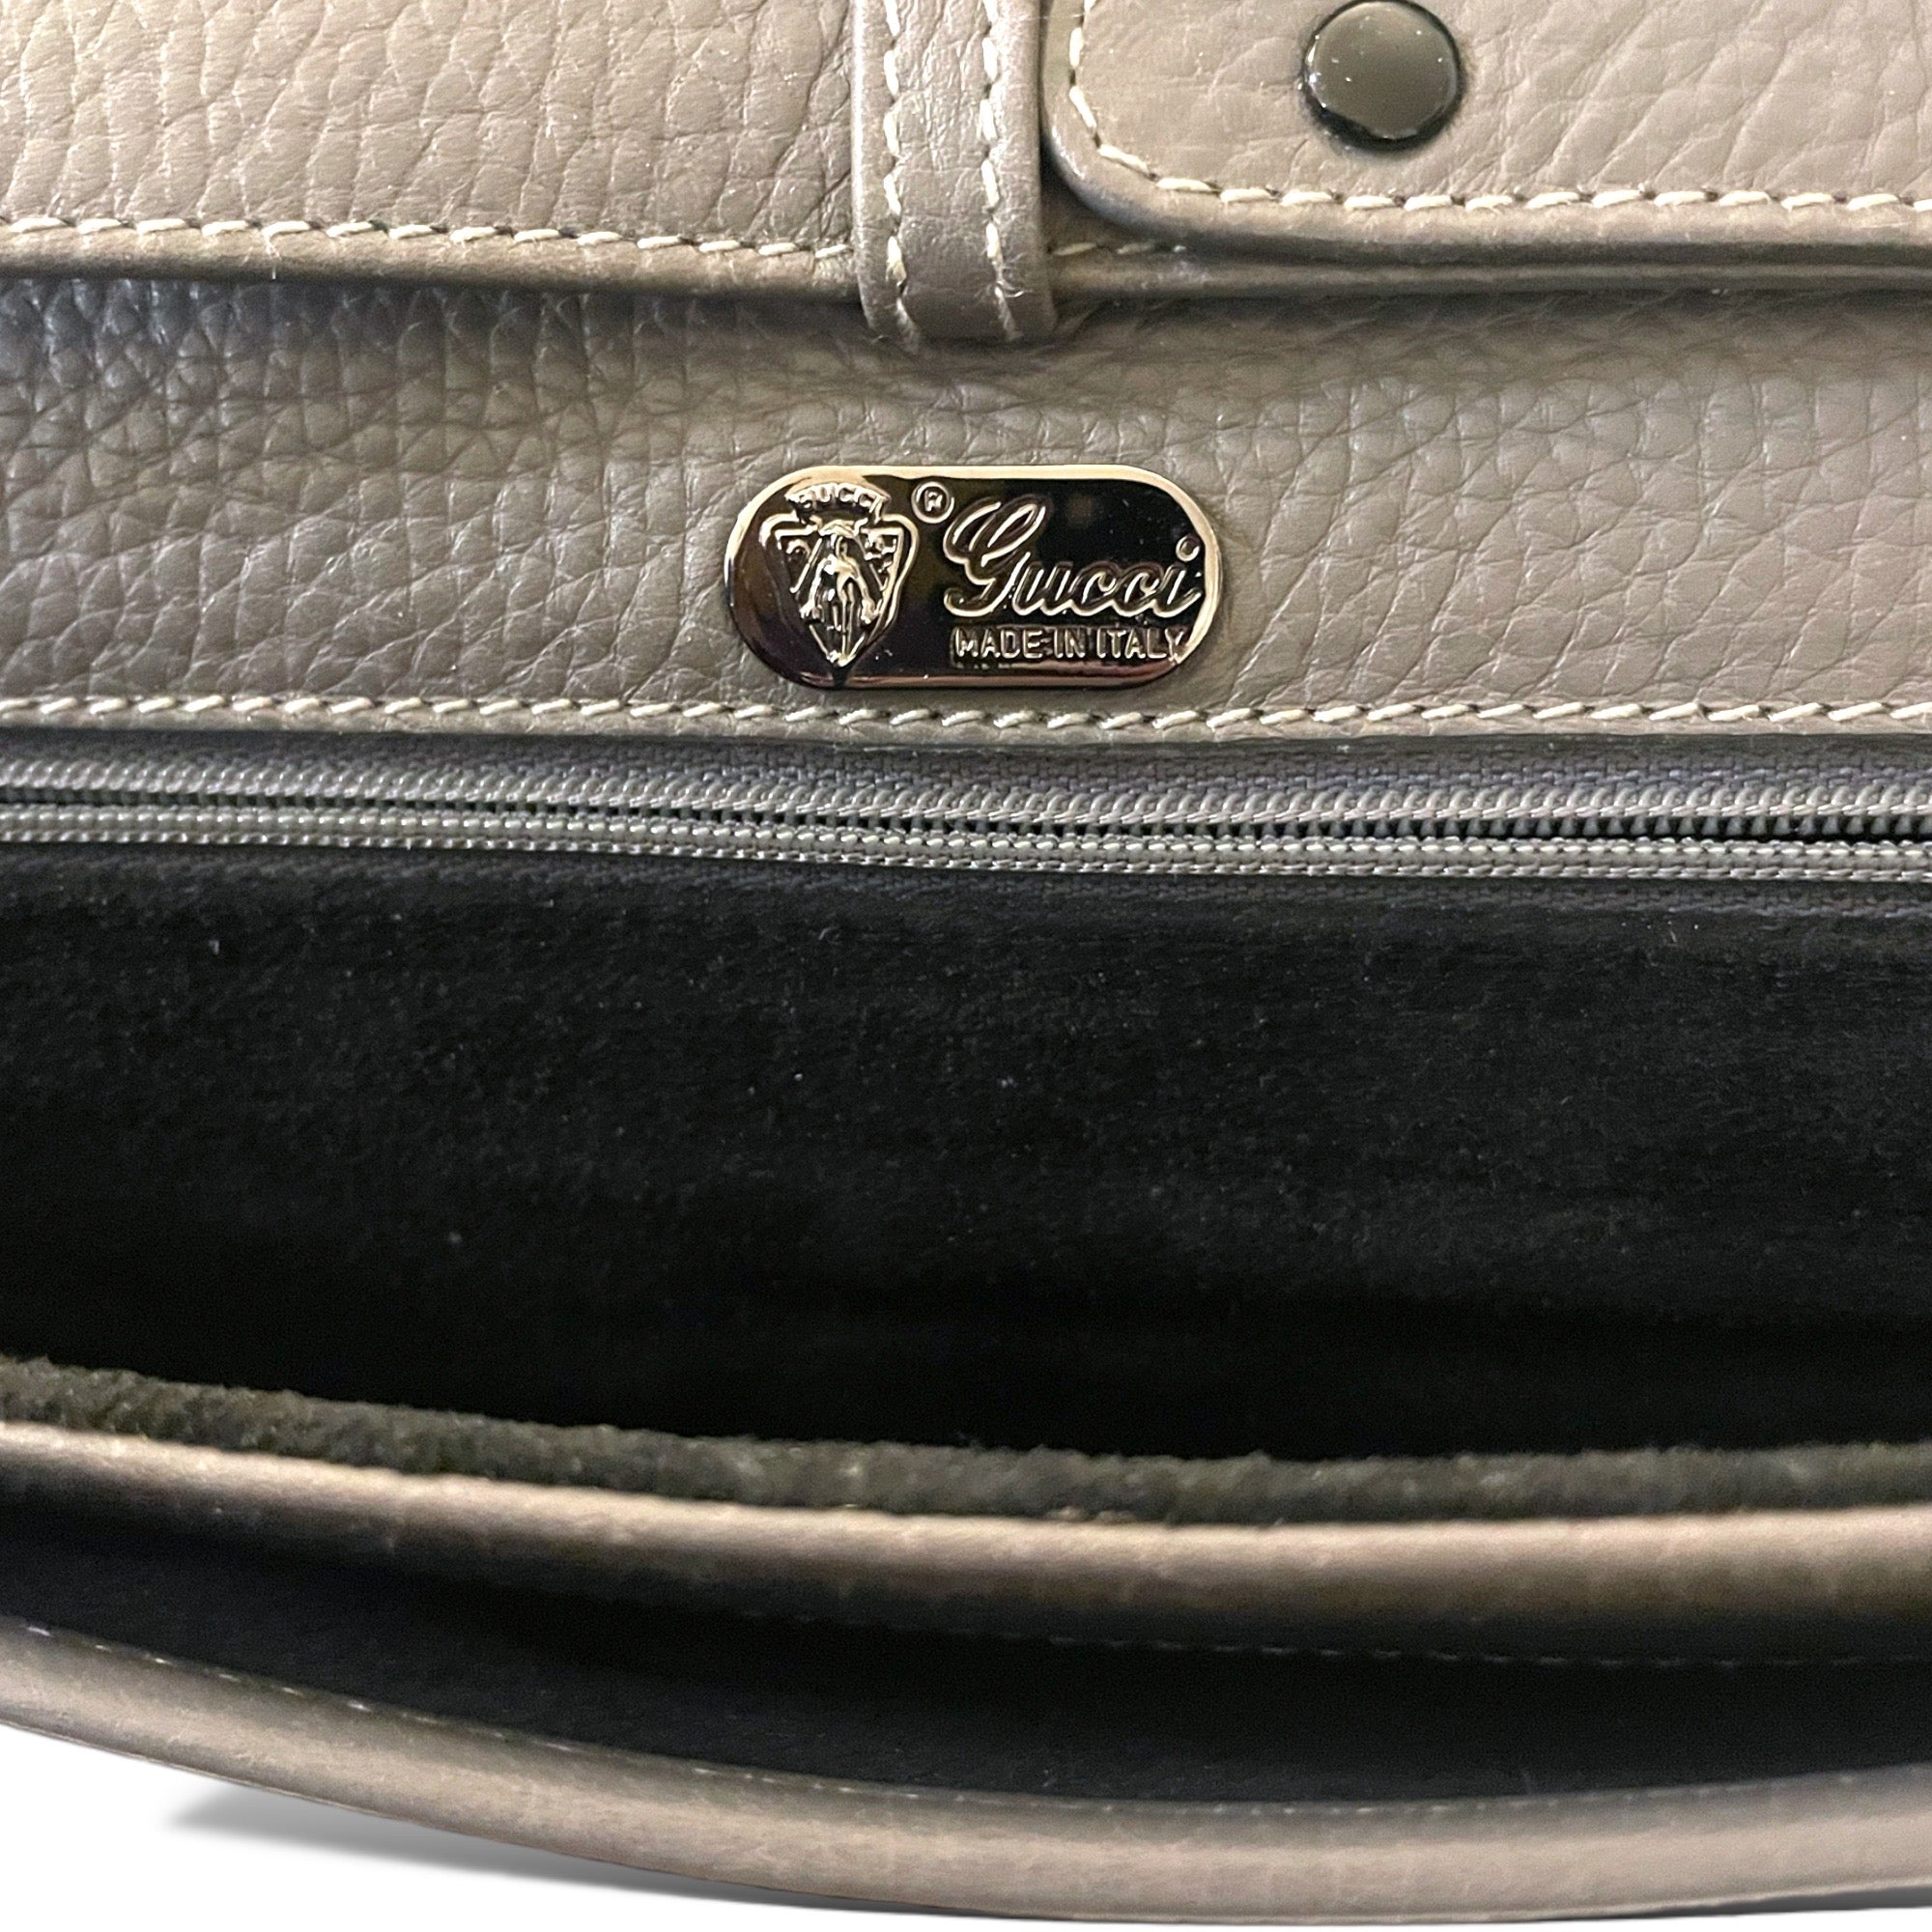 GUCCI Vintage Grey Leather Crossbody Bag / Clutch